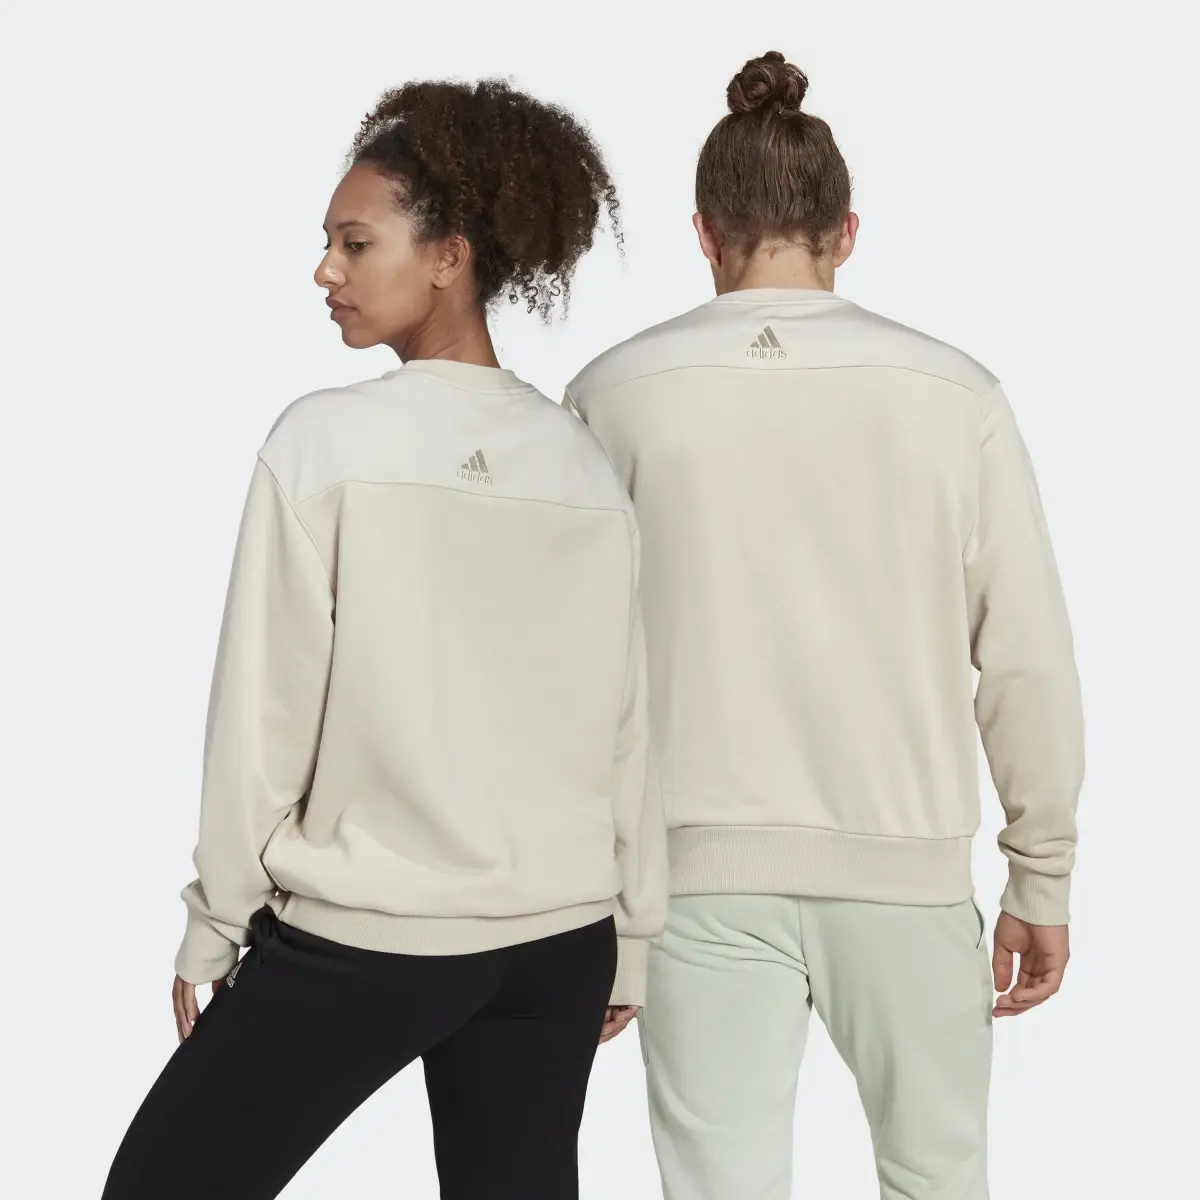 Adidas Essentials Brand Love French Terry Sweatshirt – Genderneutral. 2